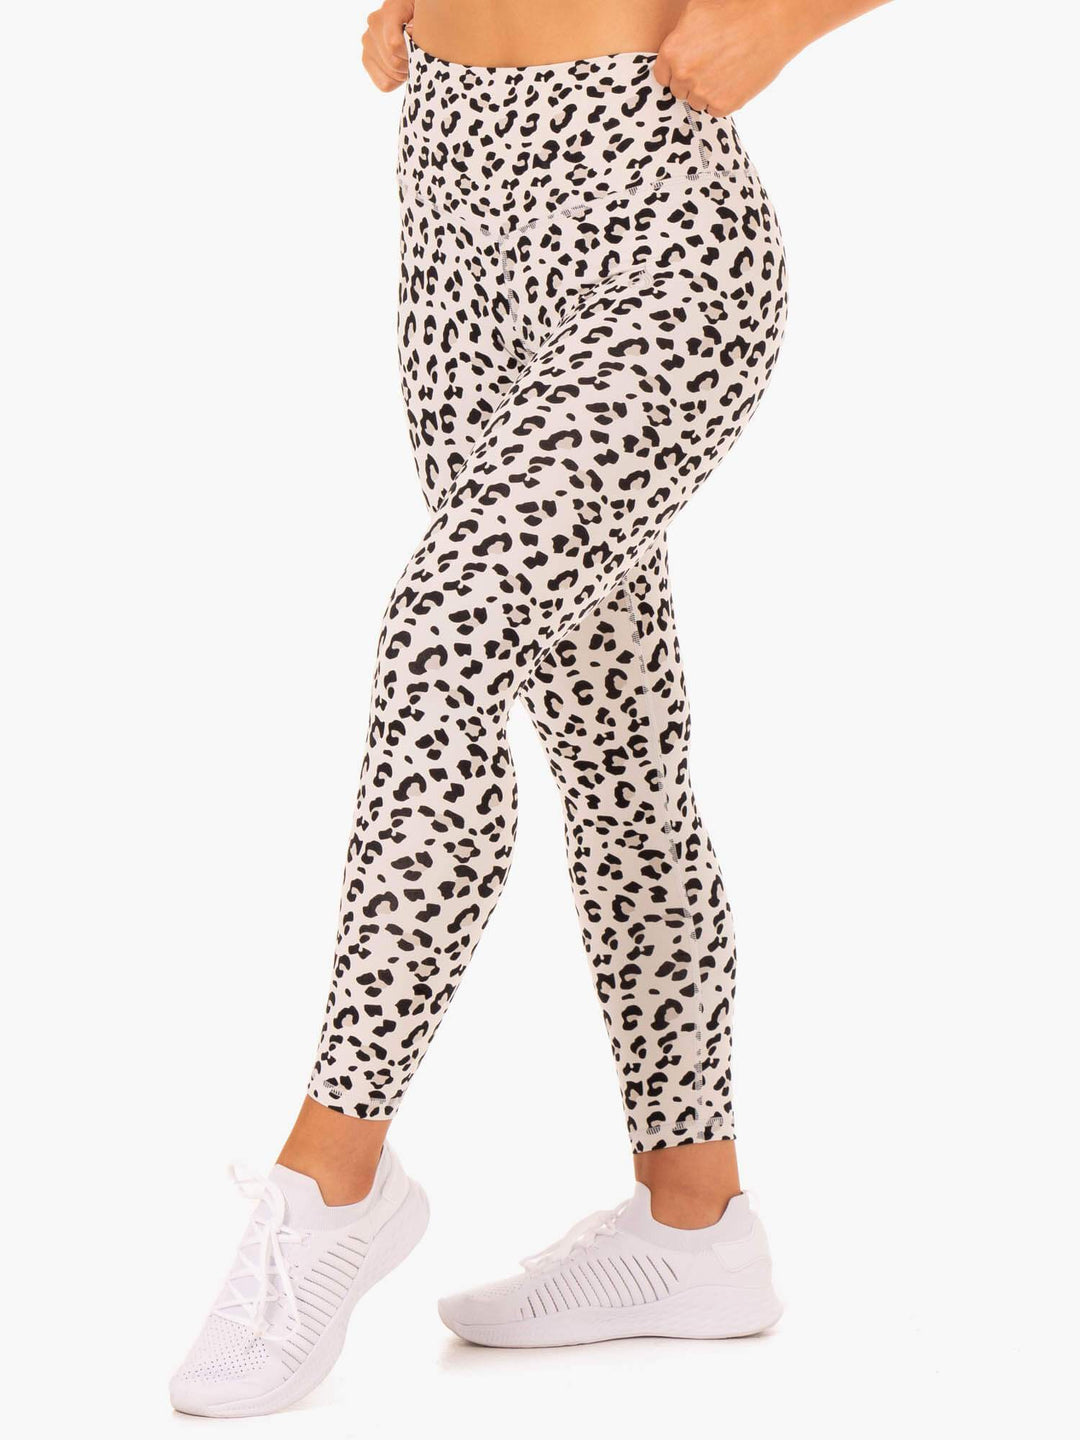 Hybrid Full Length Leggings - Ivory Leopard Clothing Ryderwear 